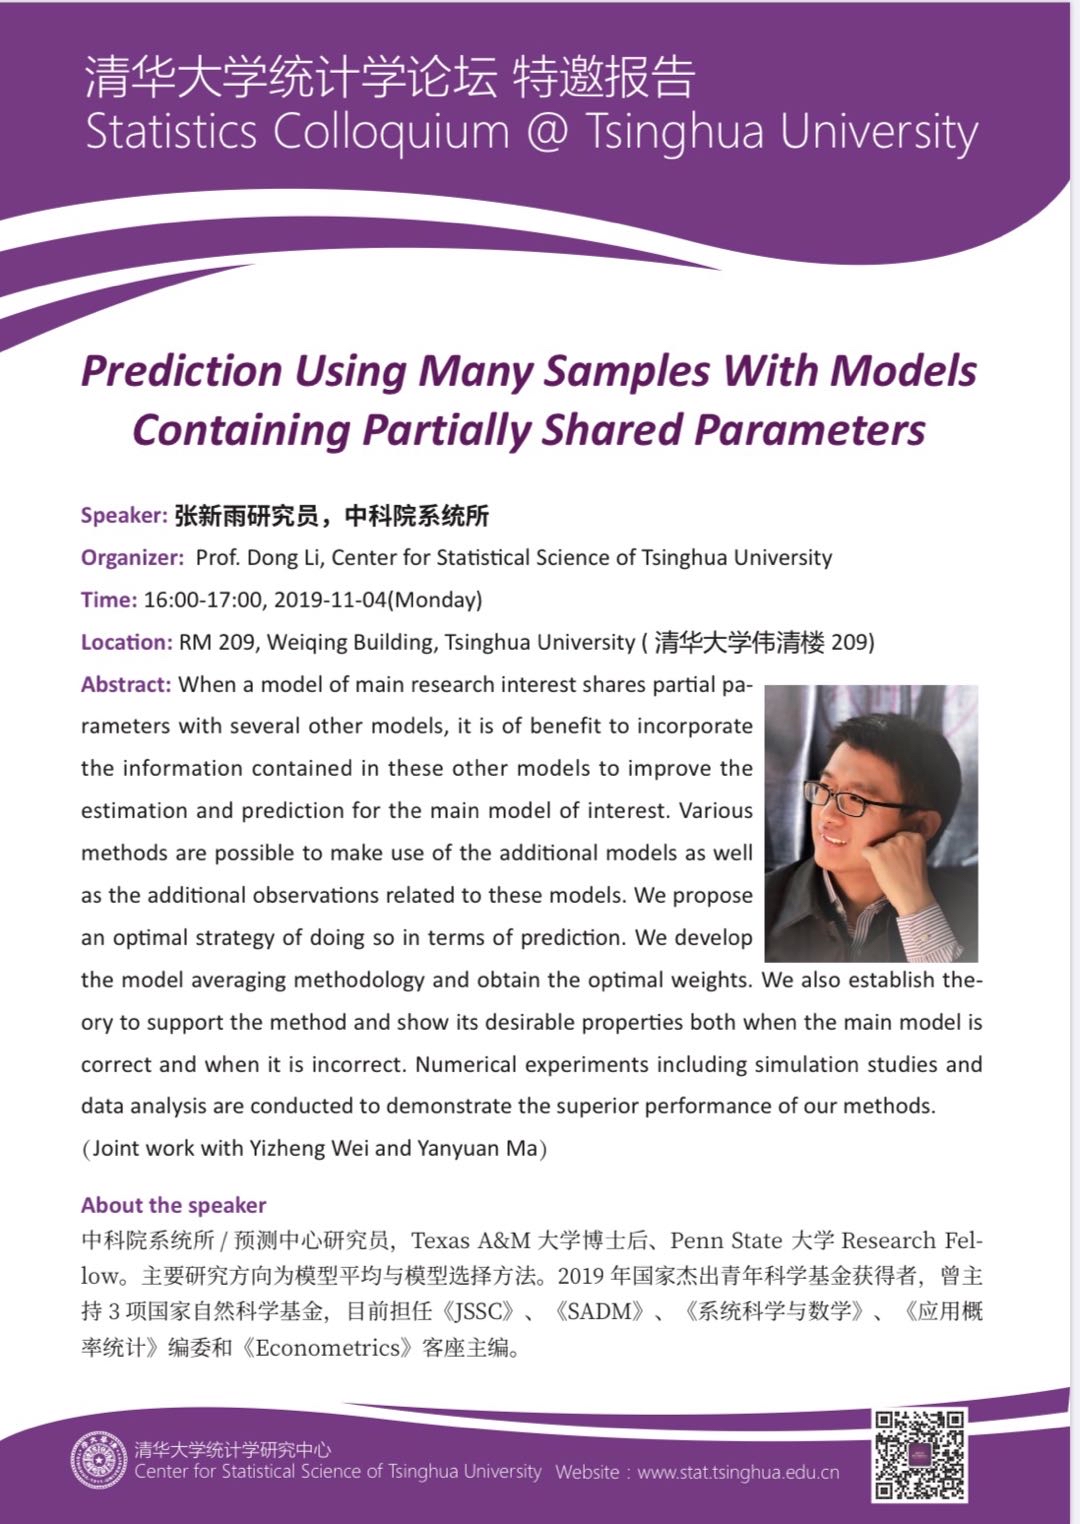 【统计学论坛】Prediction Using Many Samples with Models Containing Partially Shared Parameters